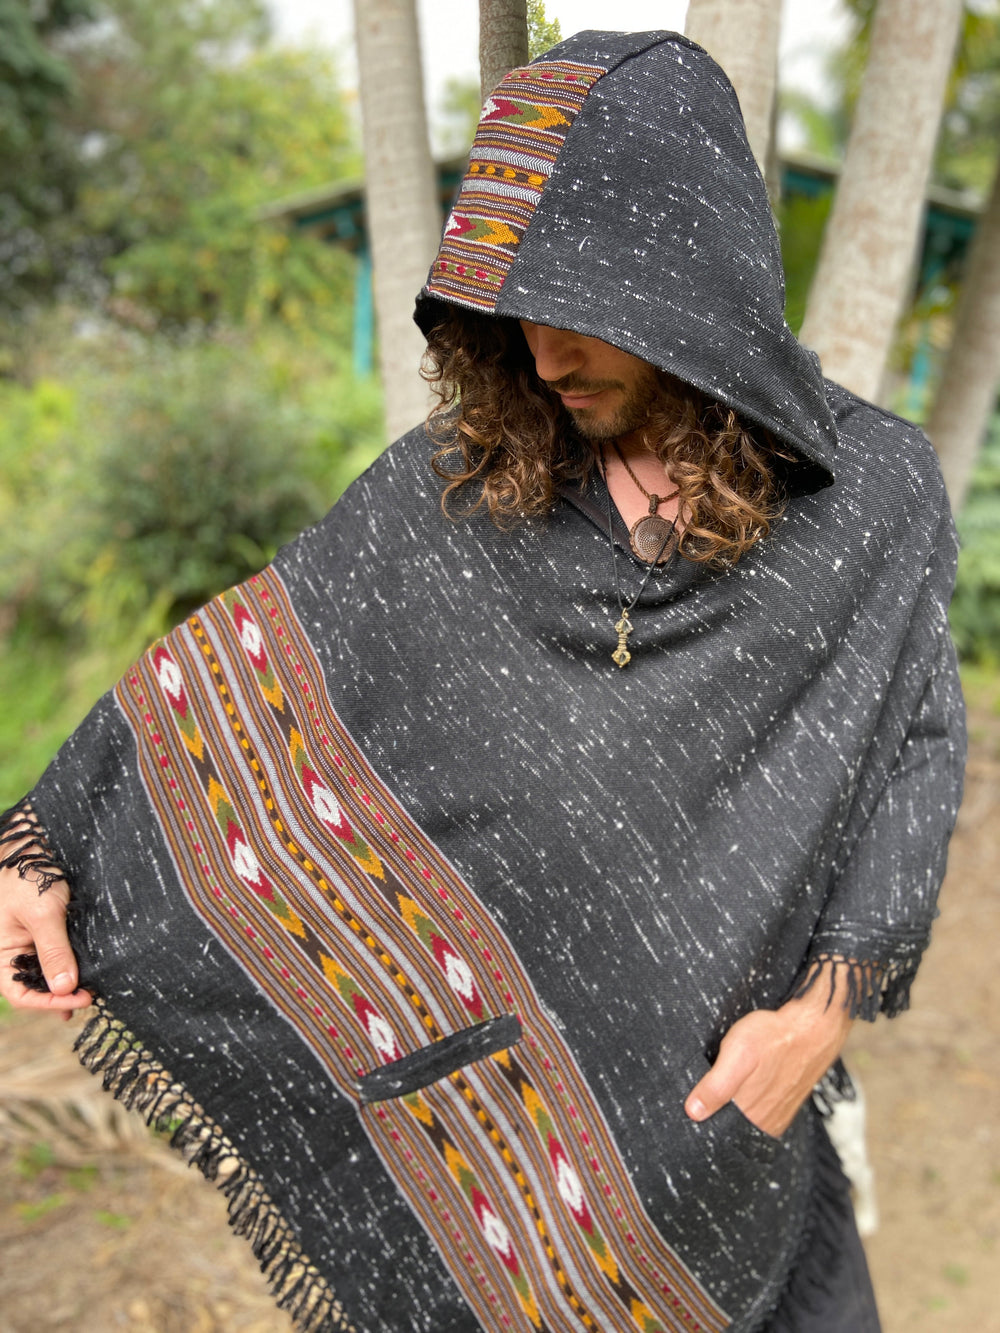 Tribal Boho Gypsy Clothing for Men & Women - AJJAYA